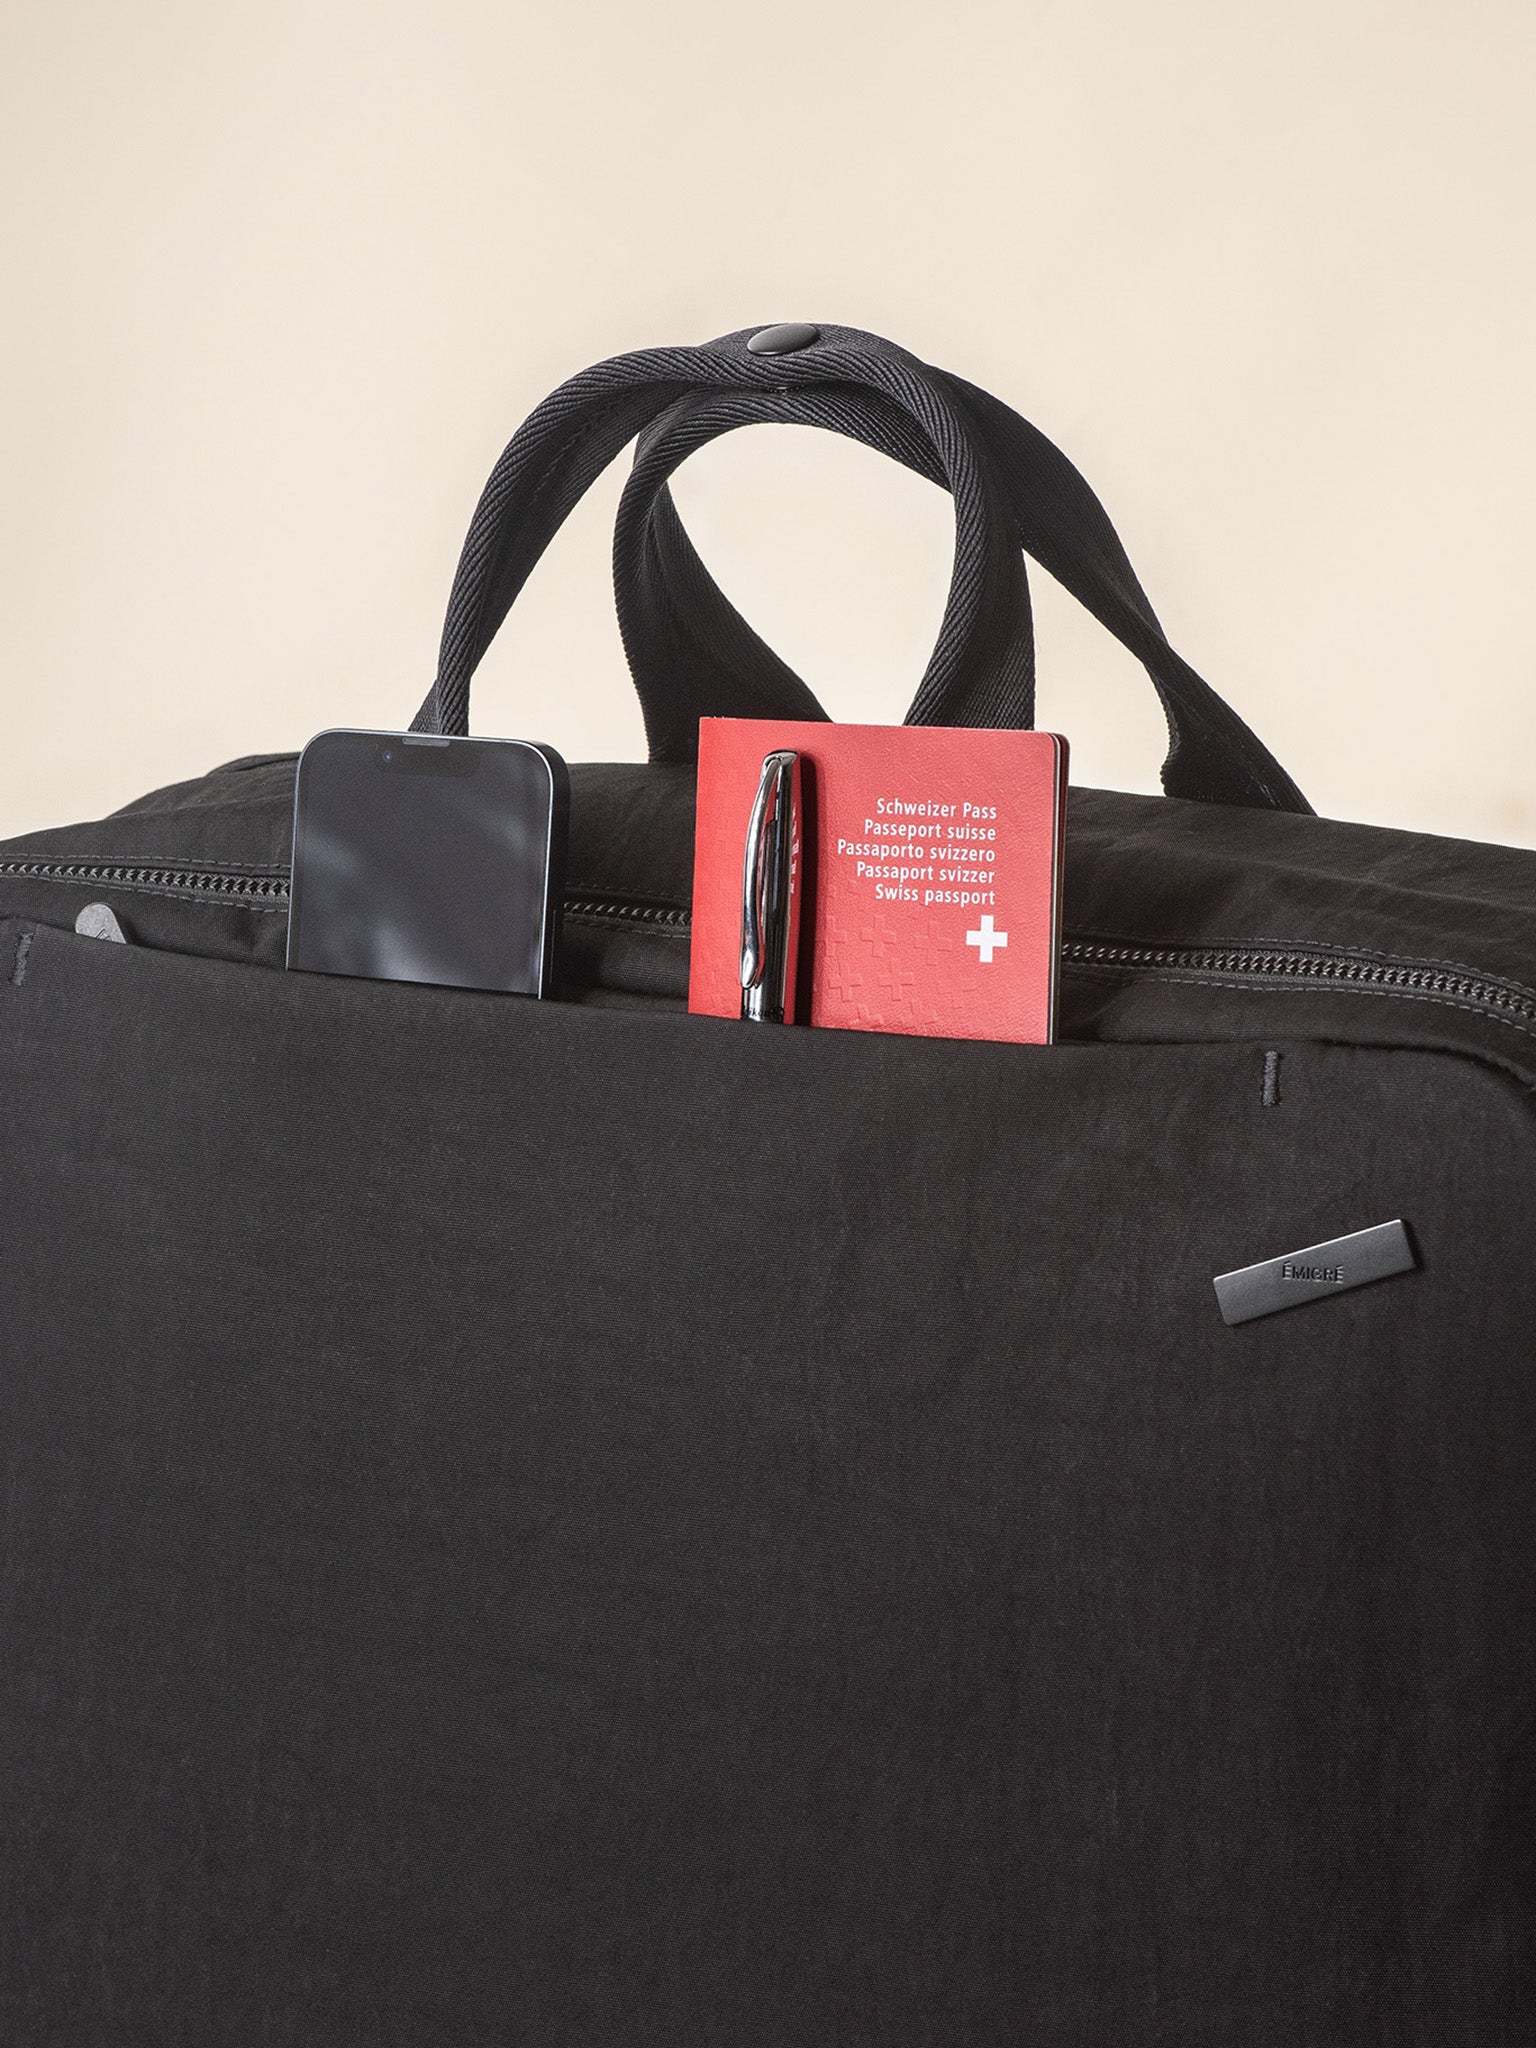 Duffle Bag Organizer / Duffle Bag Insert / Liner Protector -  Israel